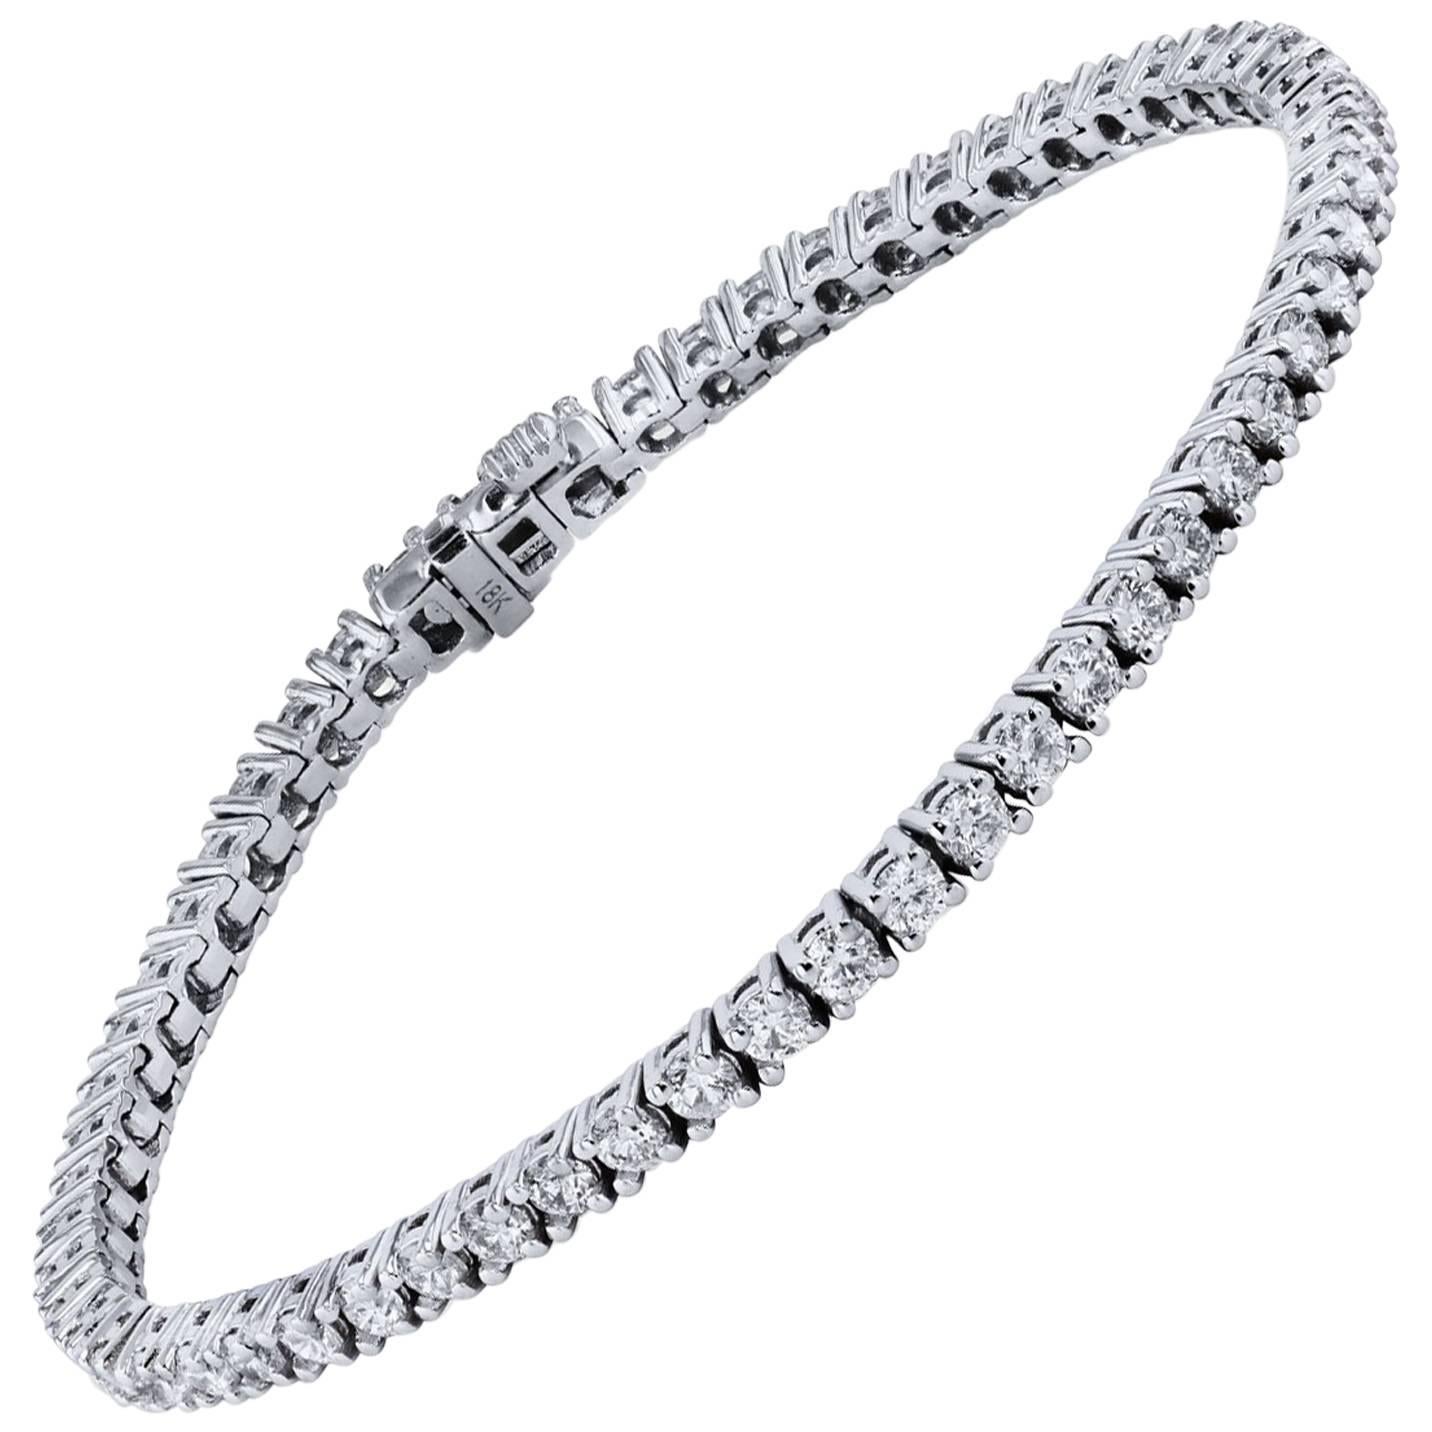 4.06 Carat Diamond Tennis Bracelet Set in 18 karat White Gold  